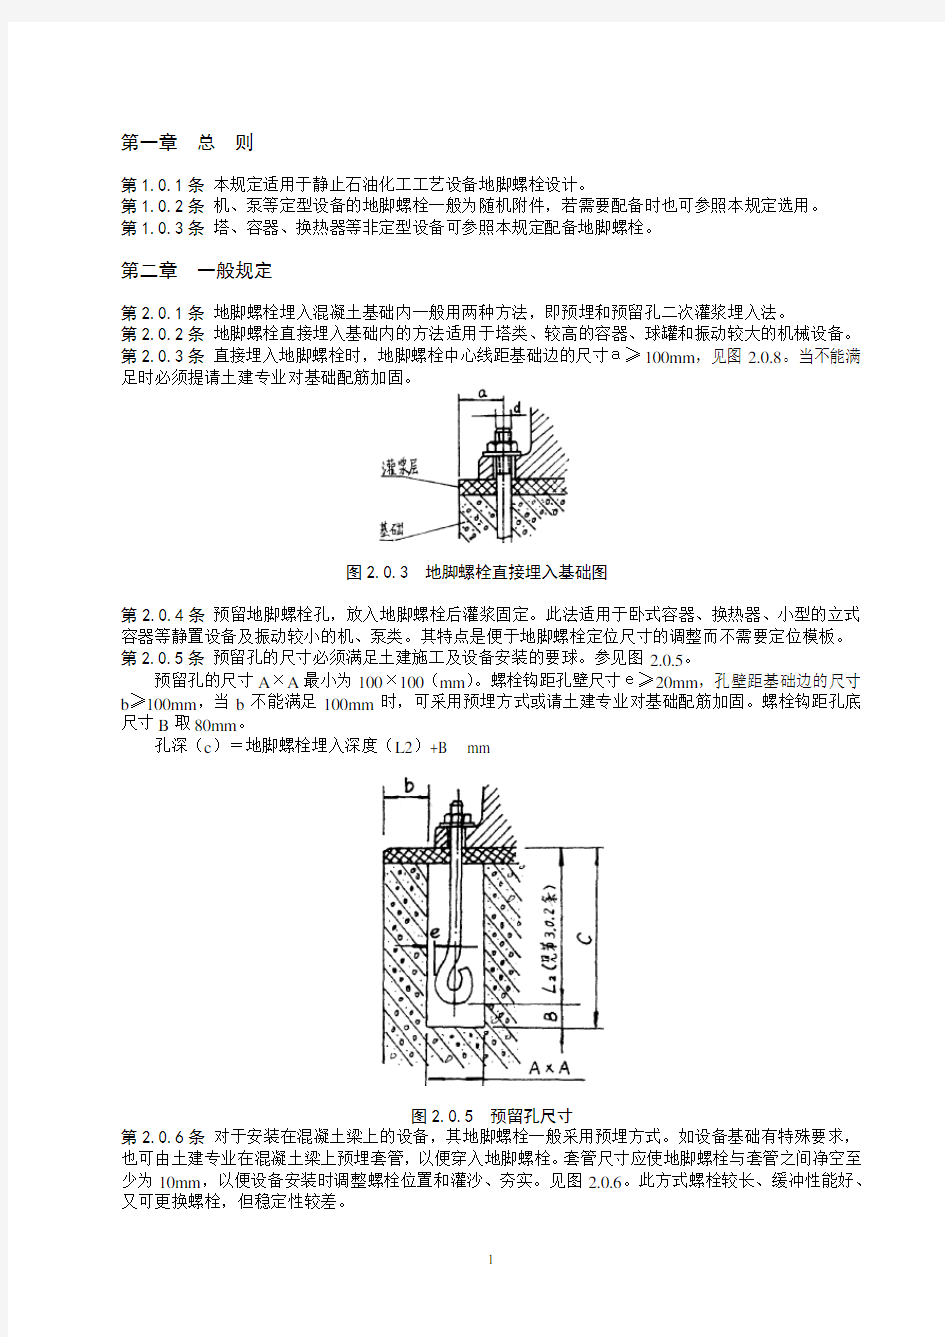 关于地脚螺栓设计的一些常用规定